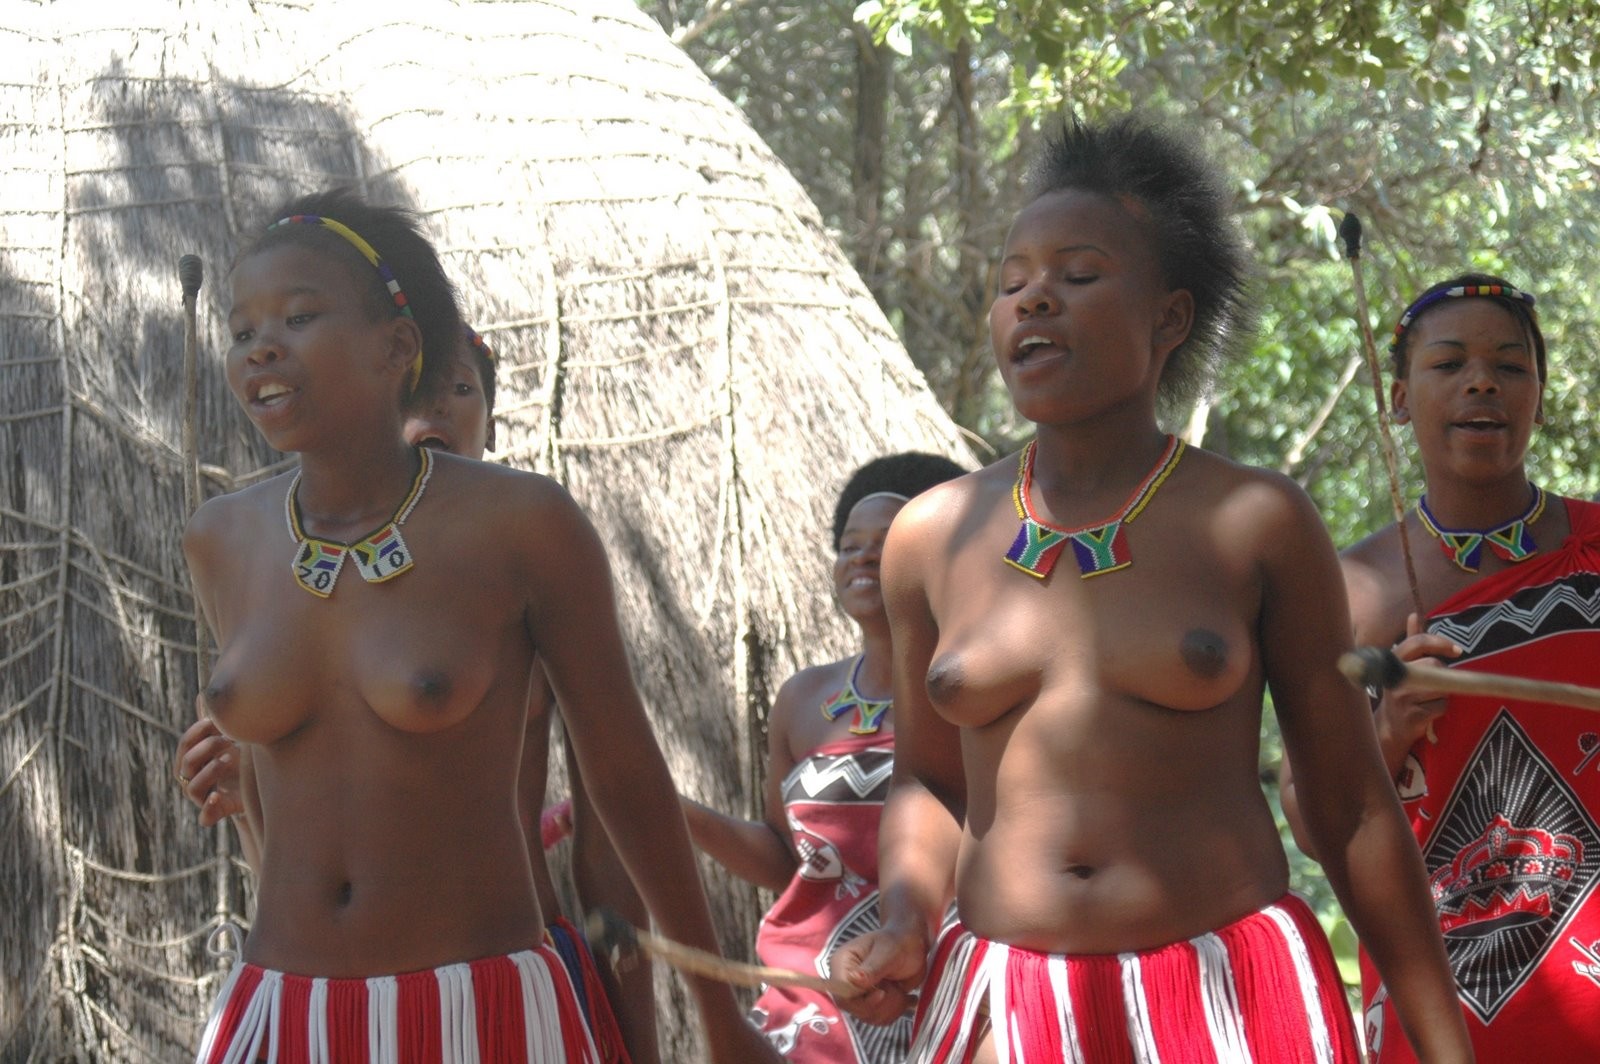 Смотреть Бесплатно Секс Африканских Племен